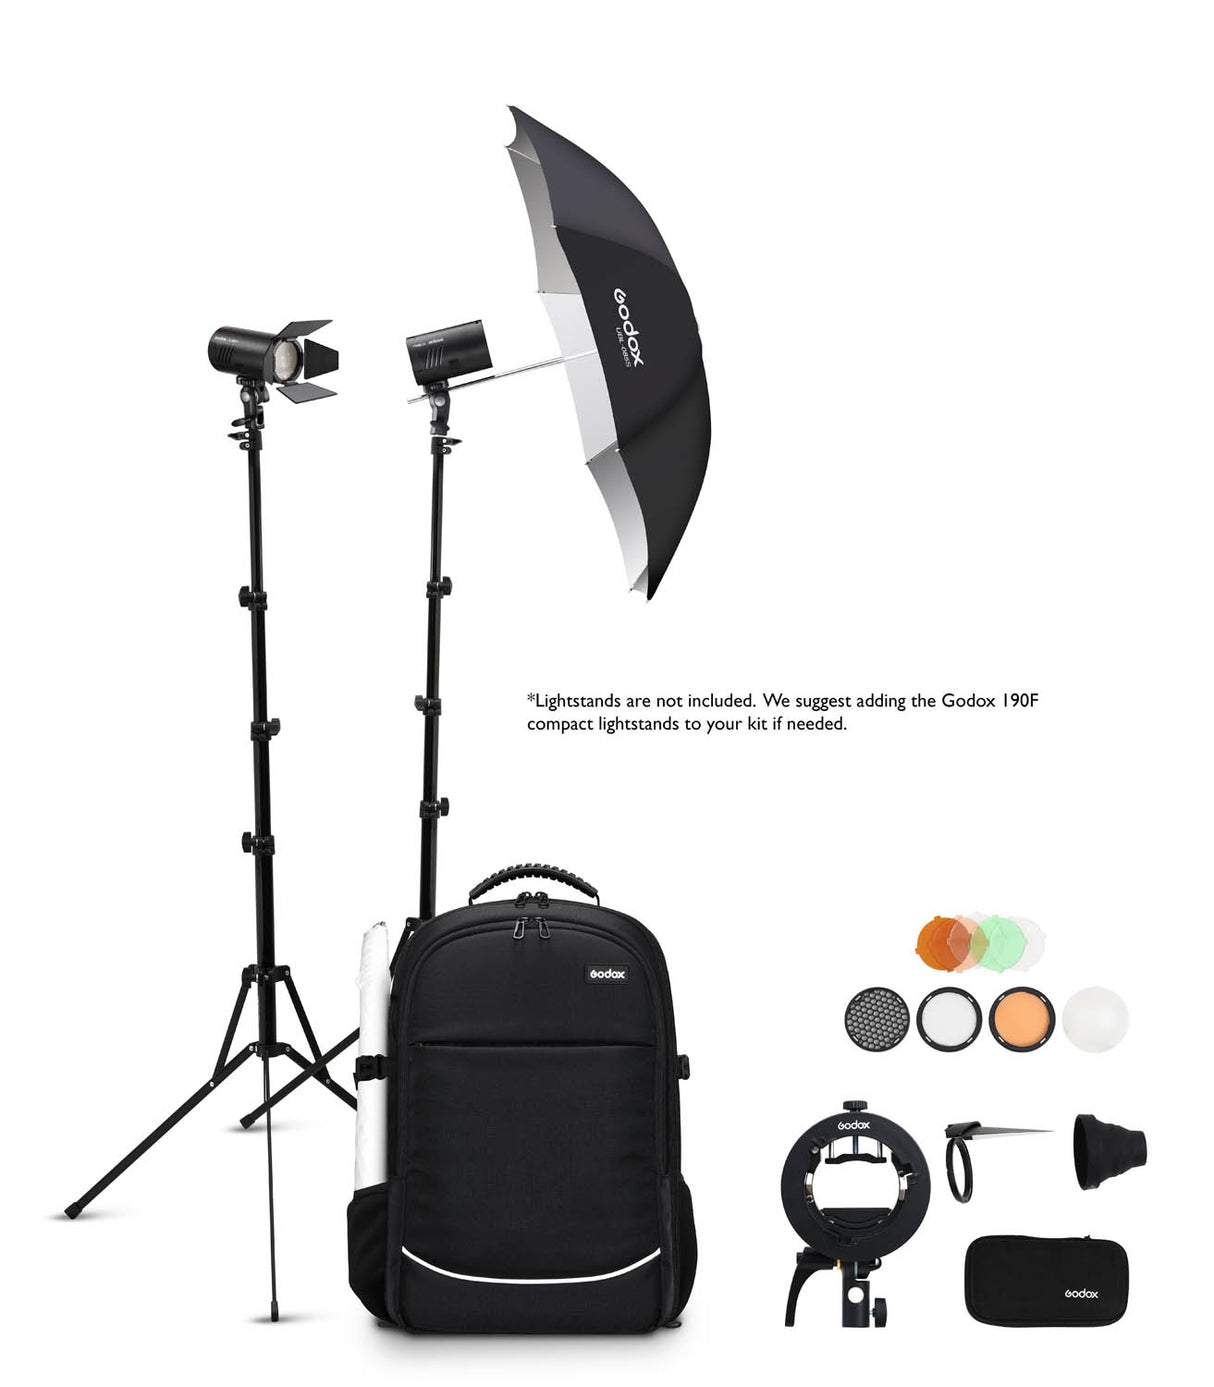 AD100Pro Two-Light Kit